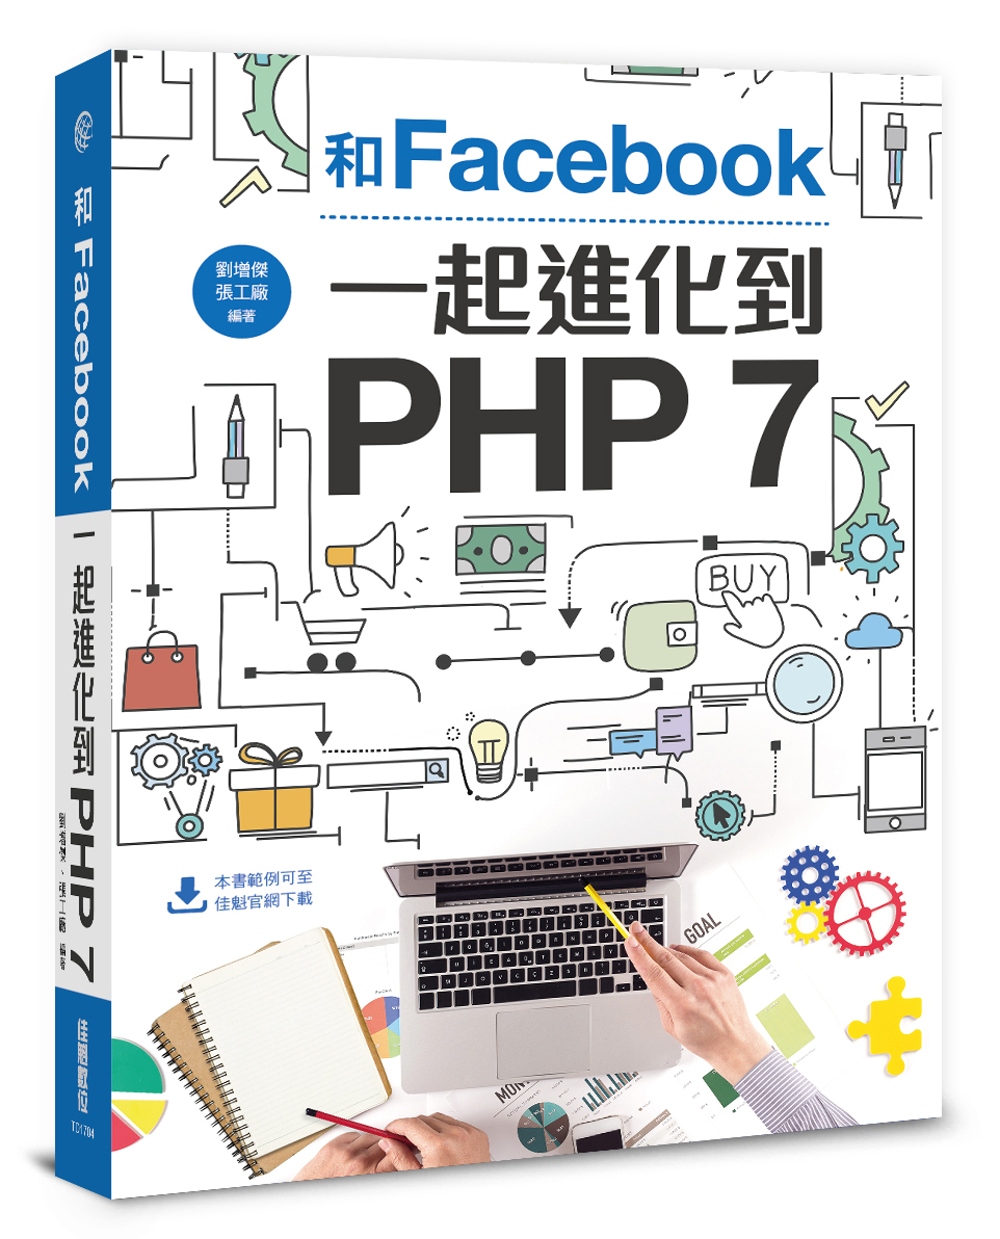 和Facebook一起進化到PHP 7